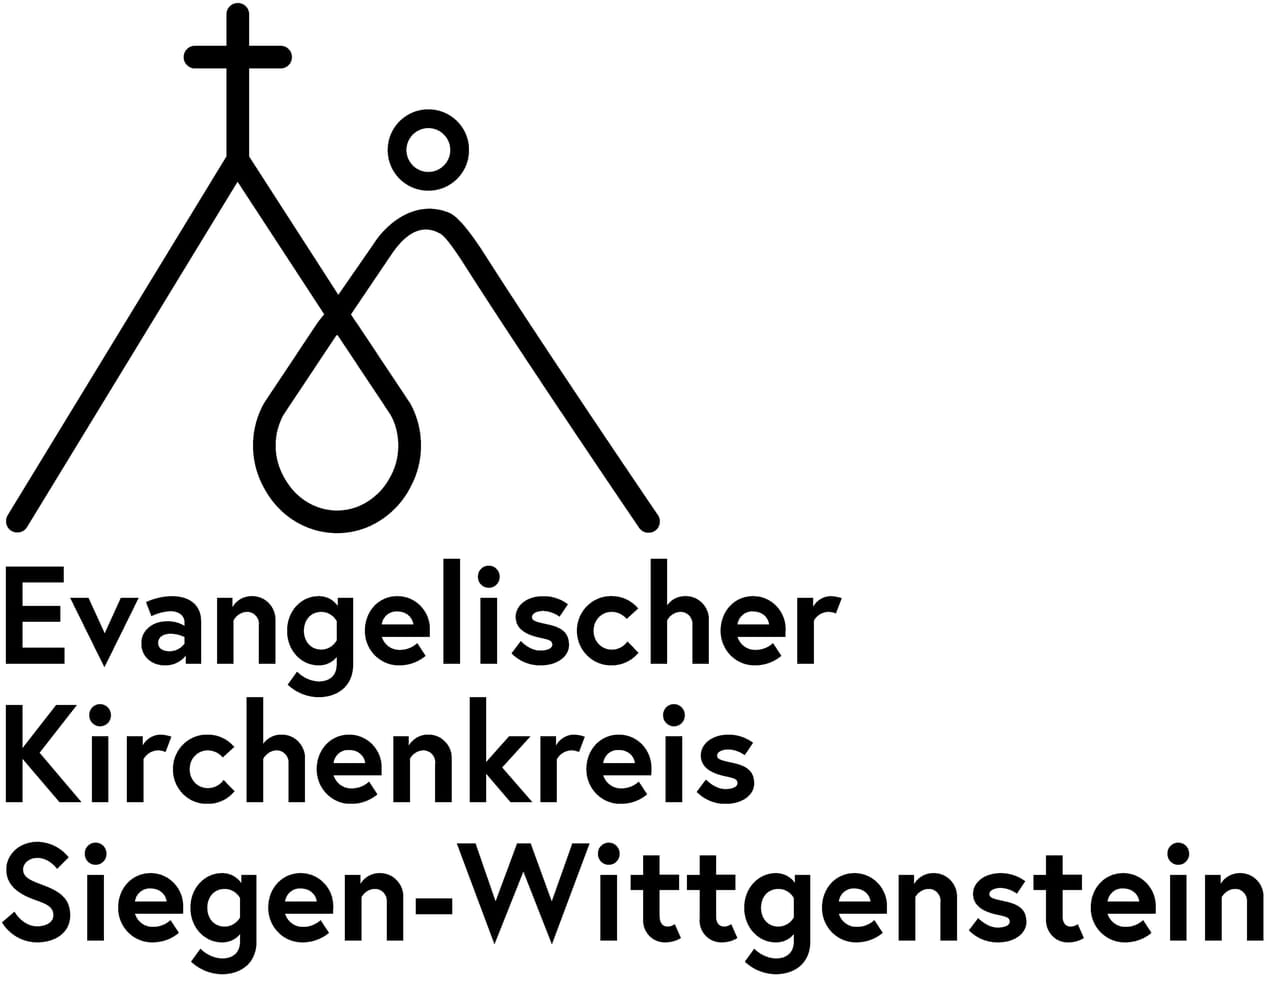 Das neue Logo des Evangelischen Kirchenkreises Siegen-Wittgenstein